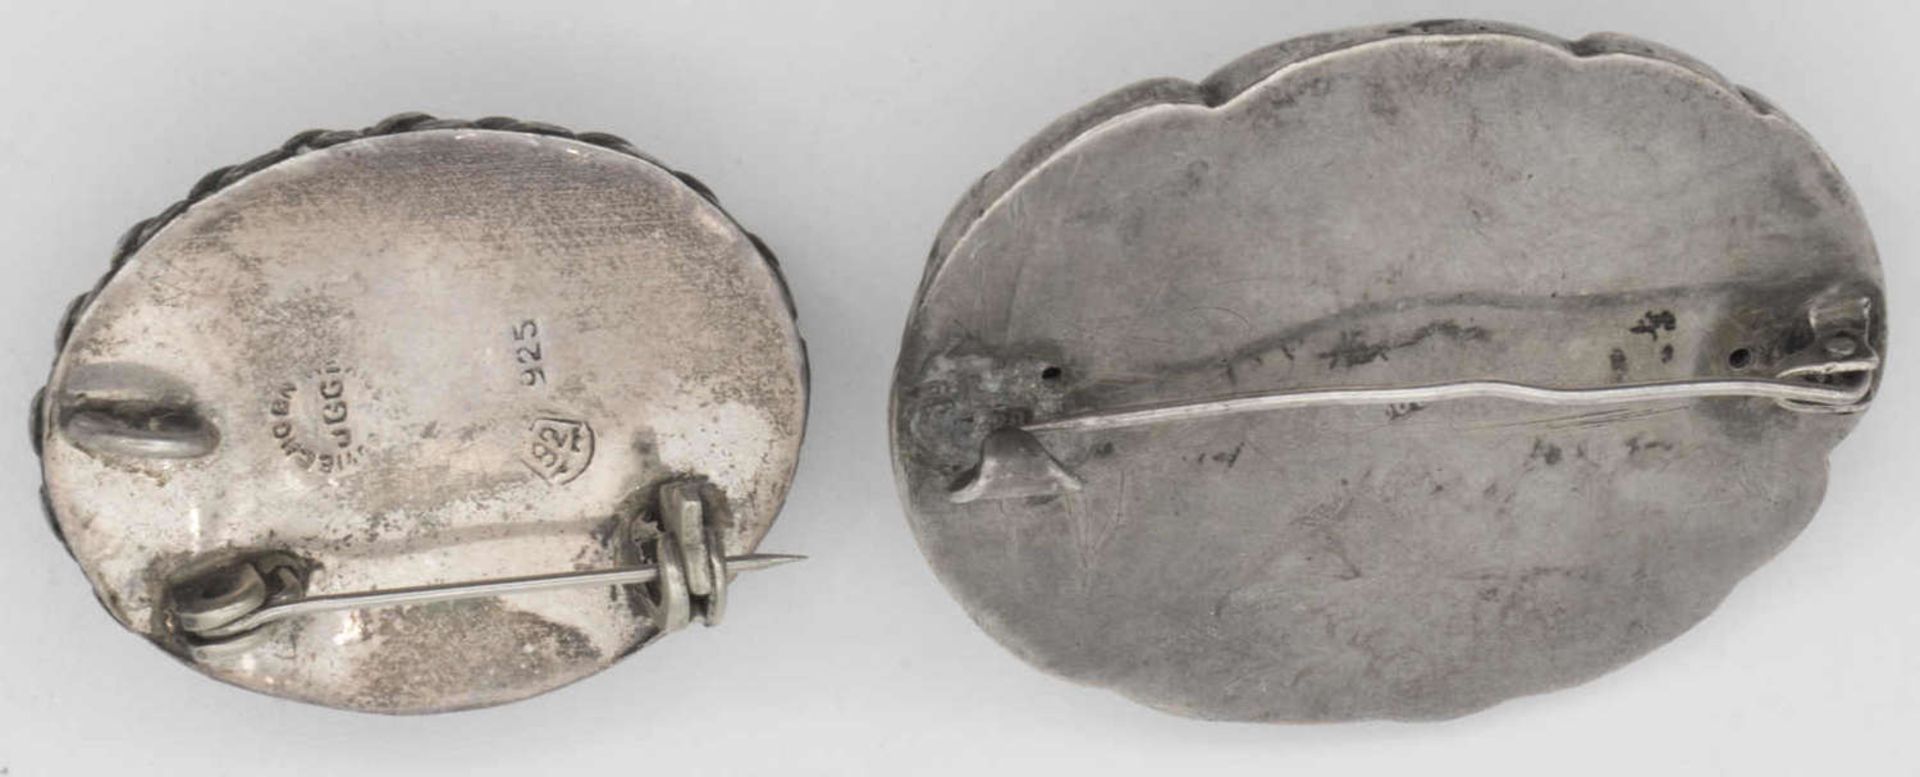 Zwei Silberbroschen, jeweils mit einem Stein besetzt. Beide gepunzt. Gesamtgewicht: ca. 21,3 g. - Image 2 of 2